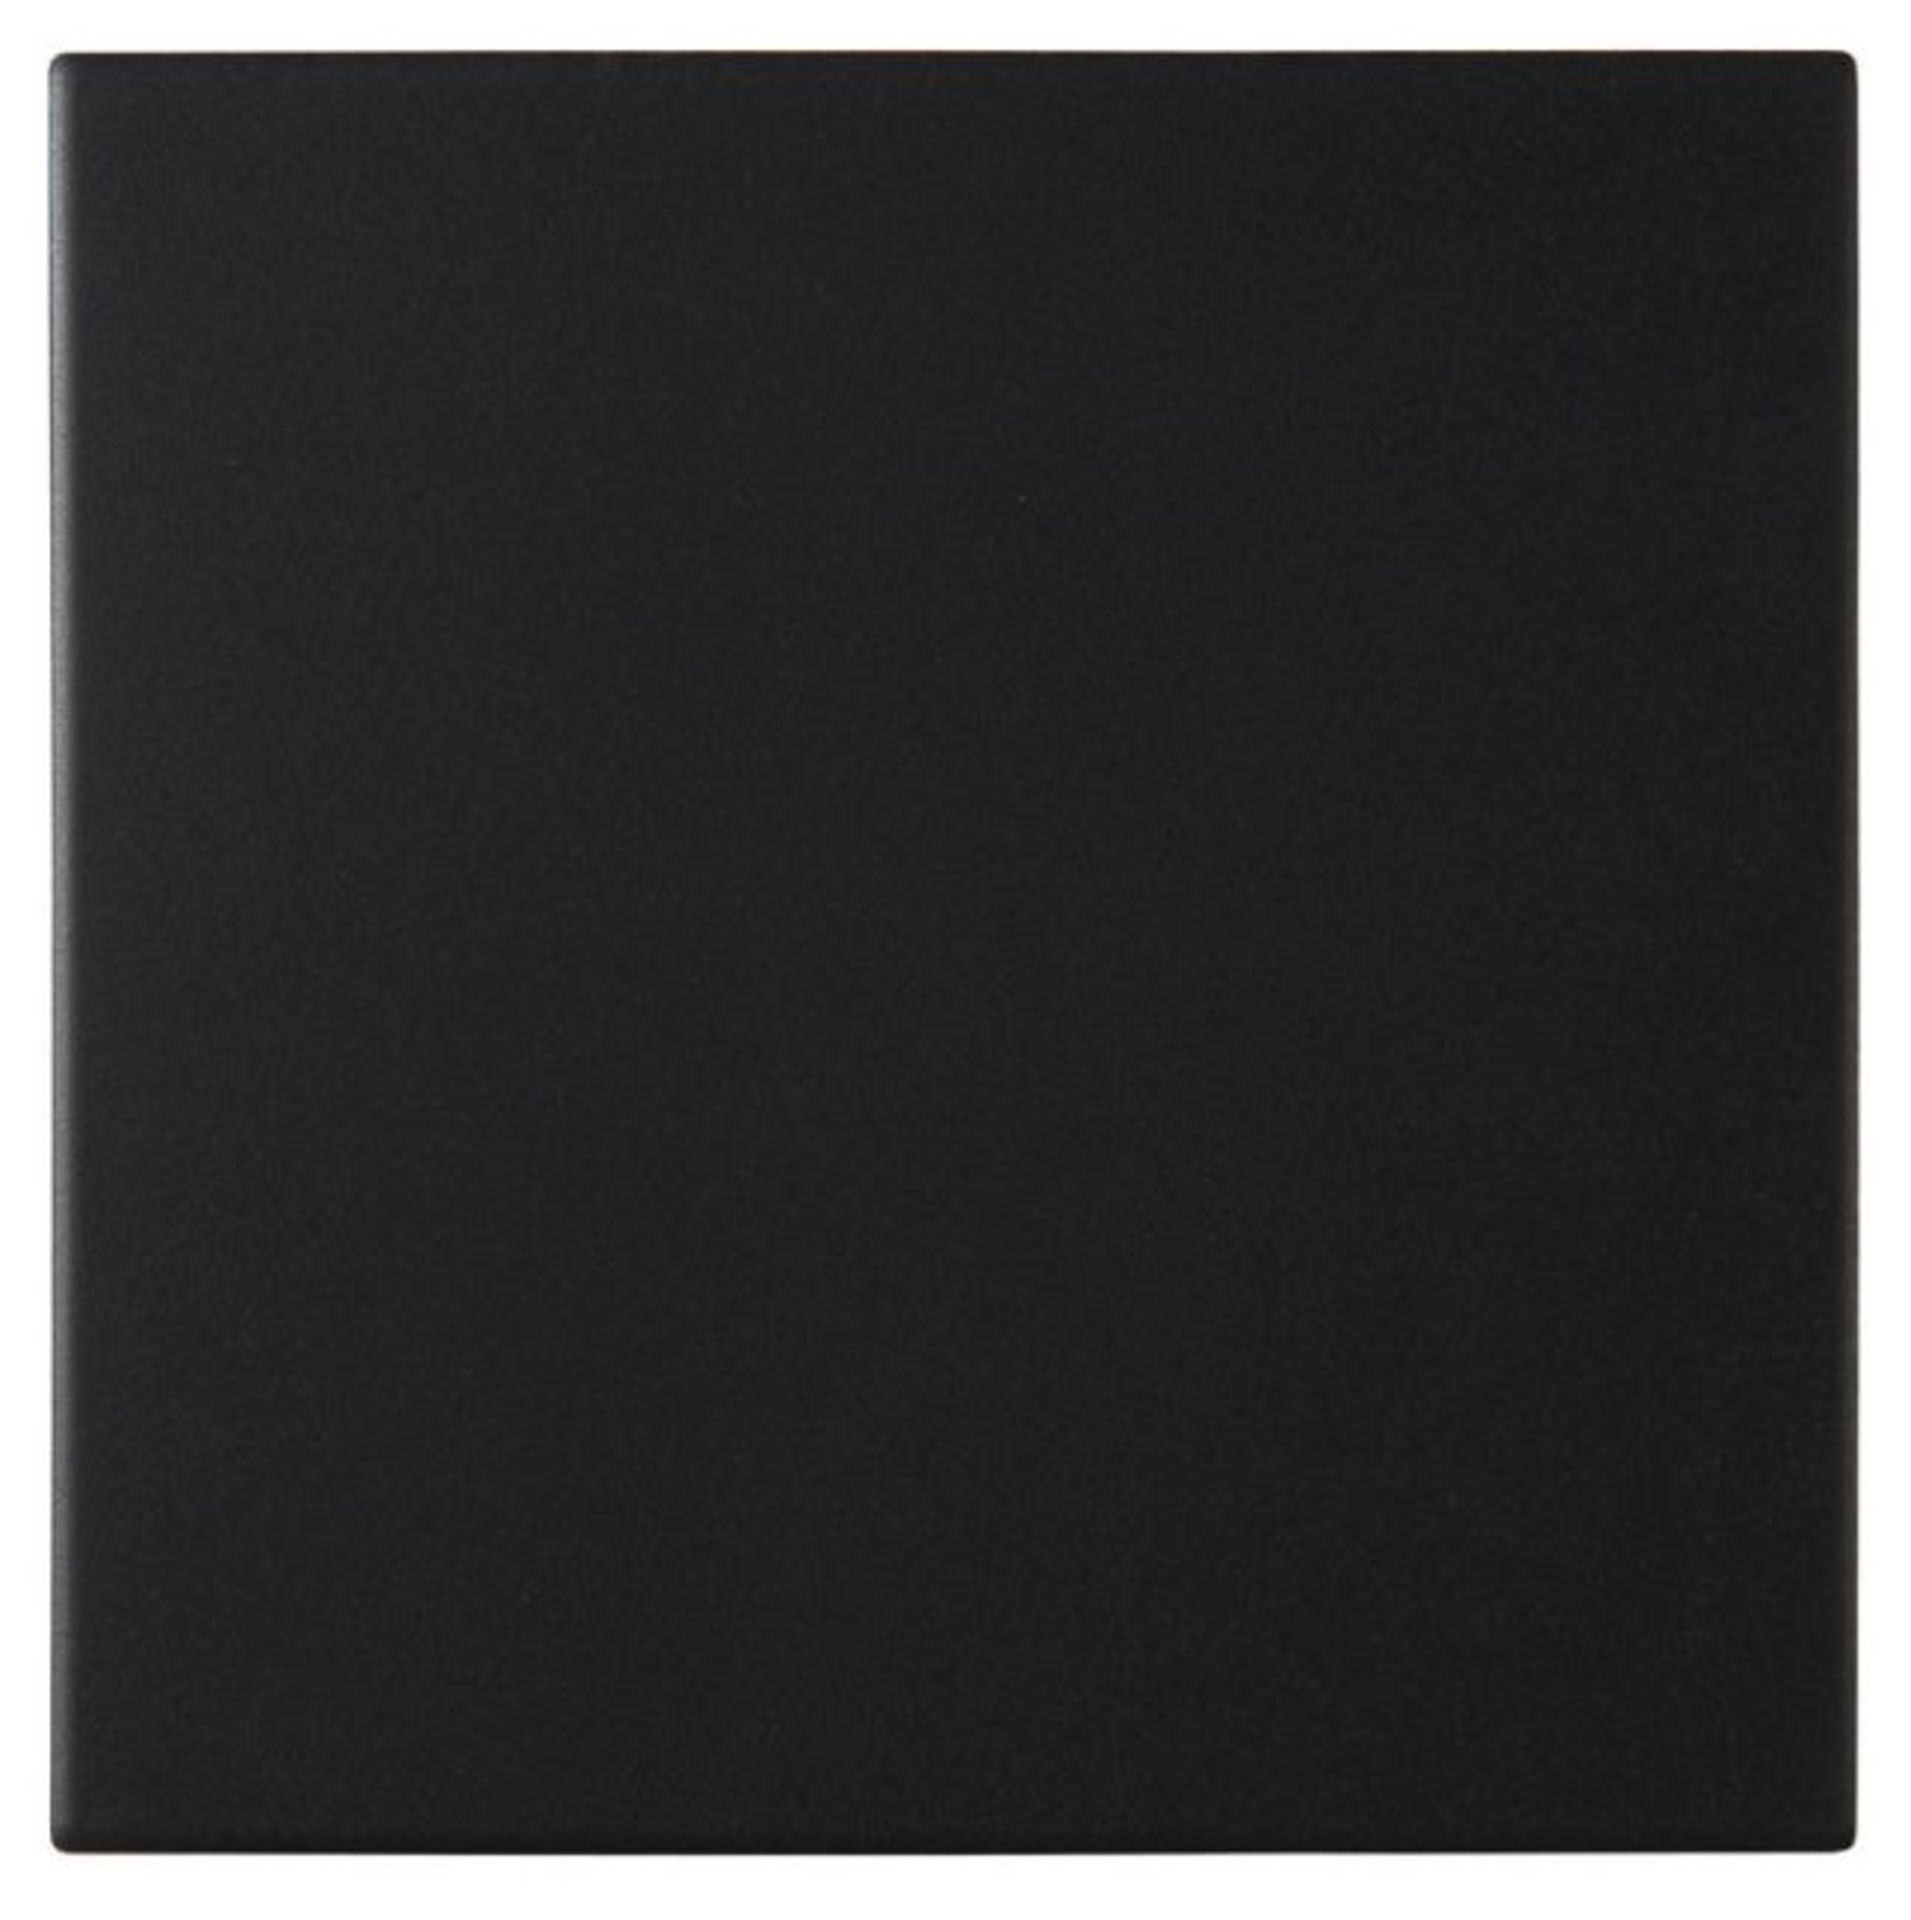 New 30.24m2 Pescaro Black Matt Plain Ceramic Wall & Floor Tile. White Box. 30x30cm Per Tile. - Image 2 of 2